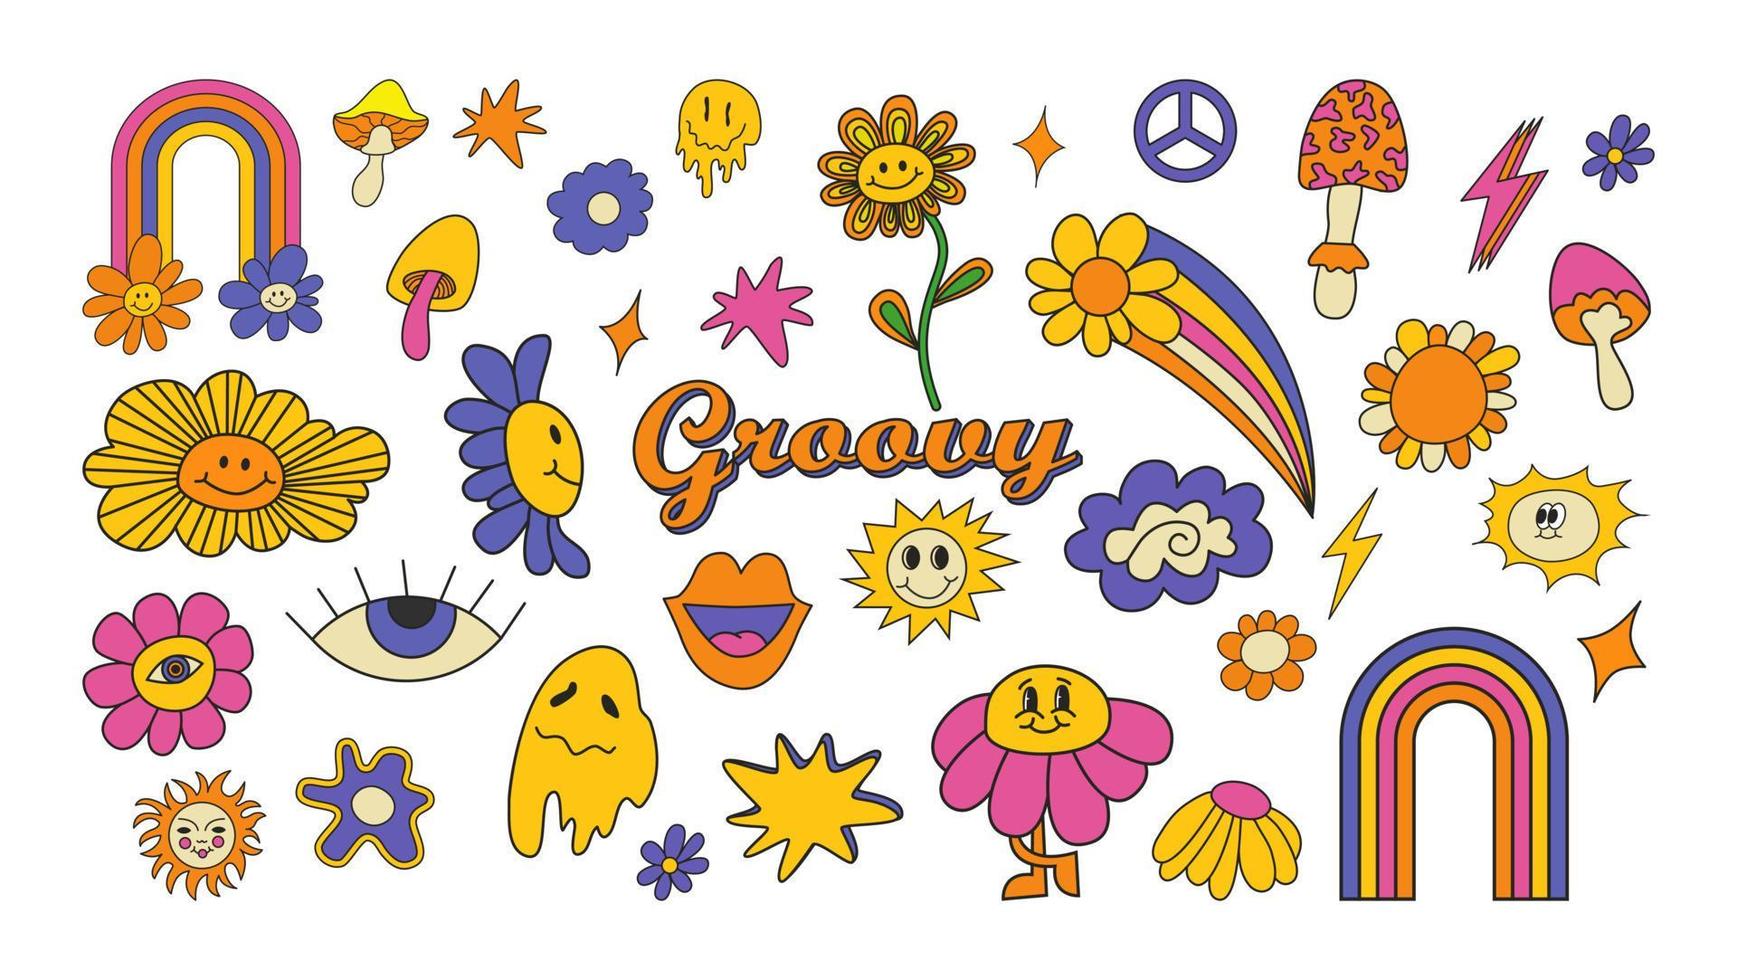 Reihe von Hipster-Retro-70er-60er-groovigen psychedelischen Elementen. karikaturgänseblümchenblumen, regenbogen, pilze, friedenszeichen, herz, hippie-aufkleber-vektorset. positive symbole oder abzeichen isoliert auf weiß vektor